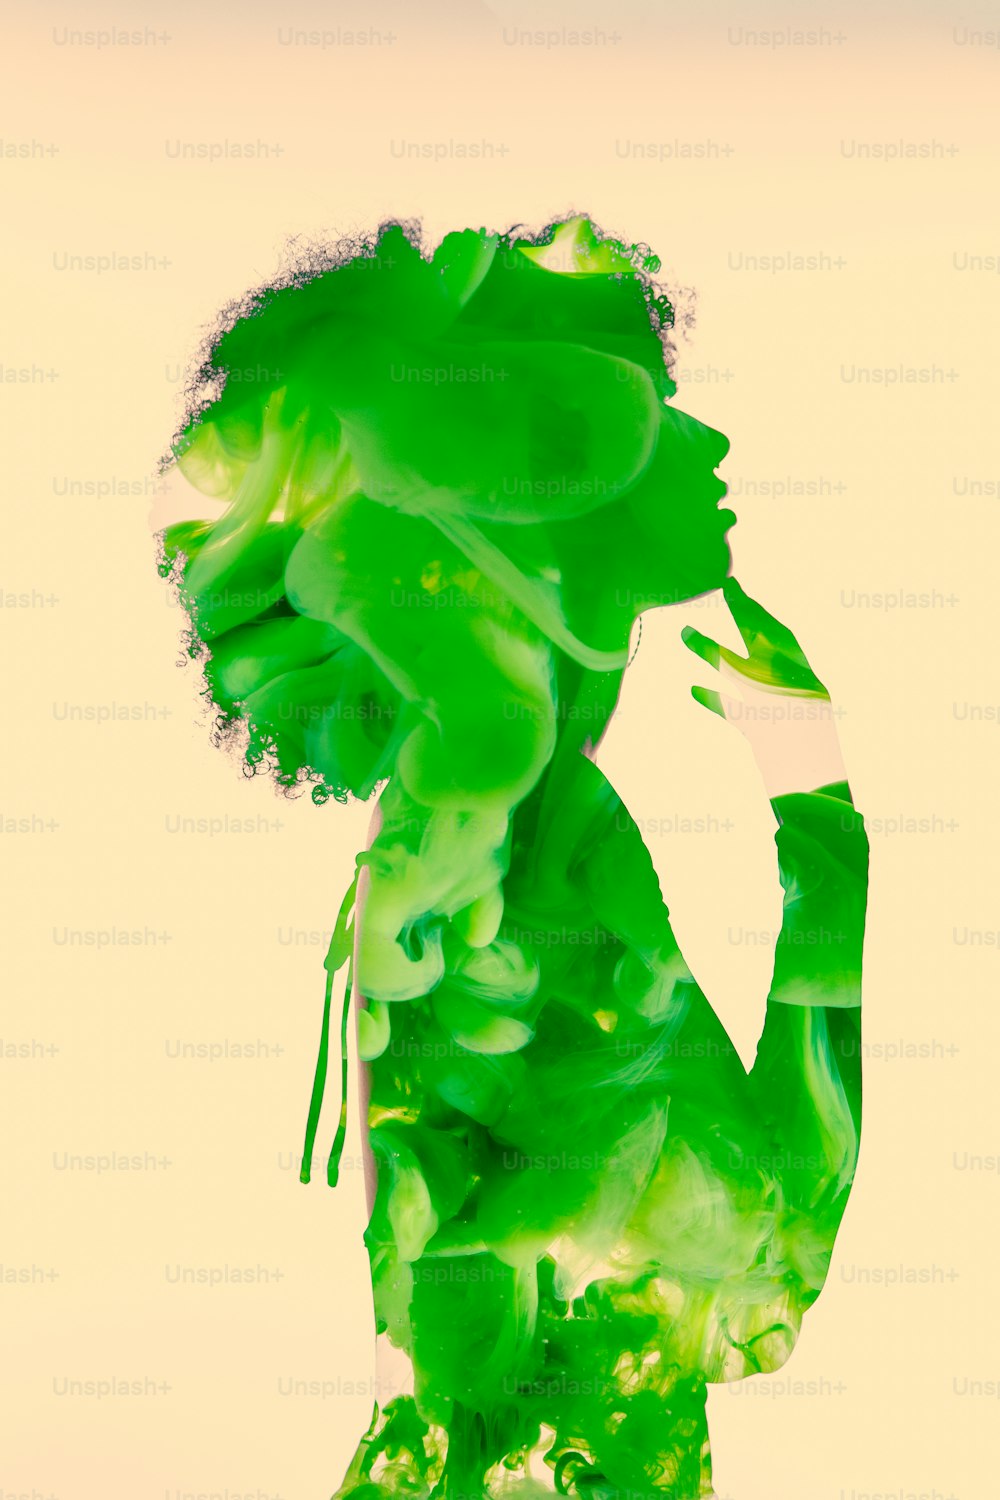 il corpo di una donna ricoperto di liquido verde